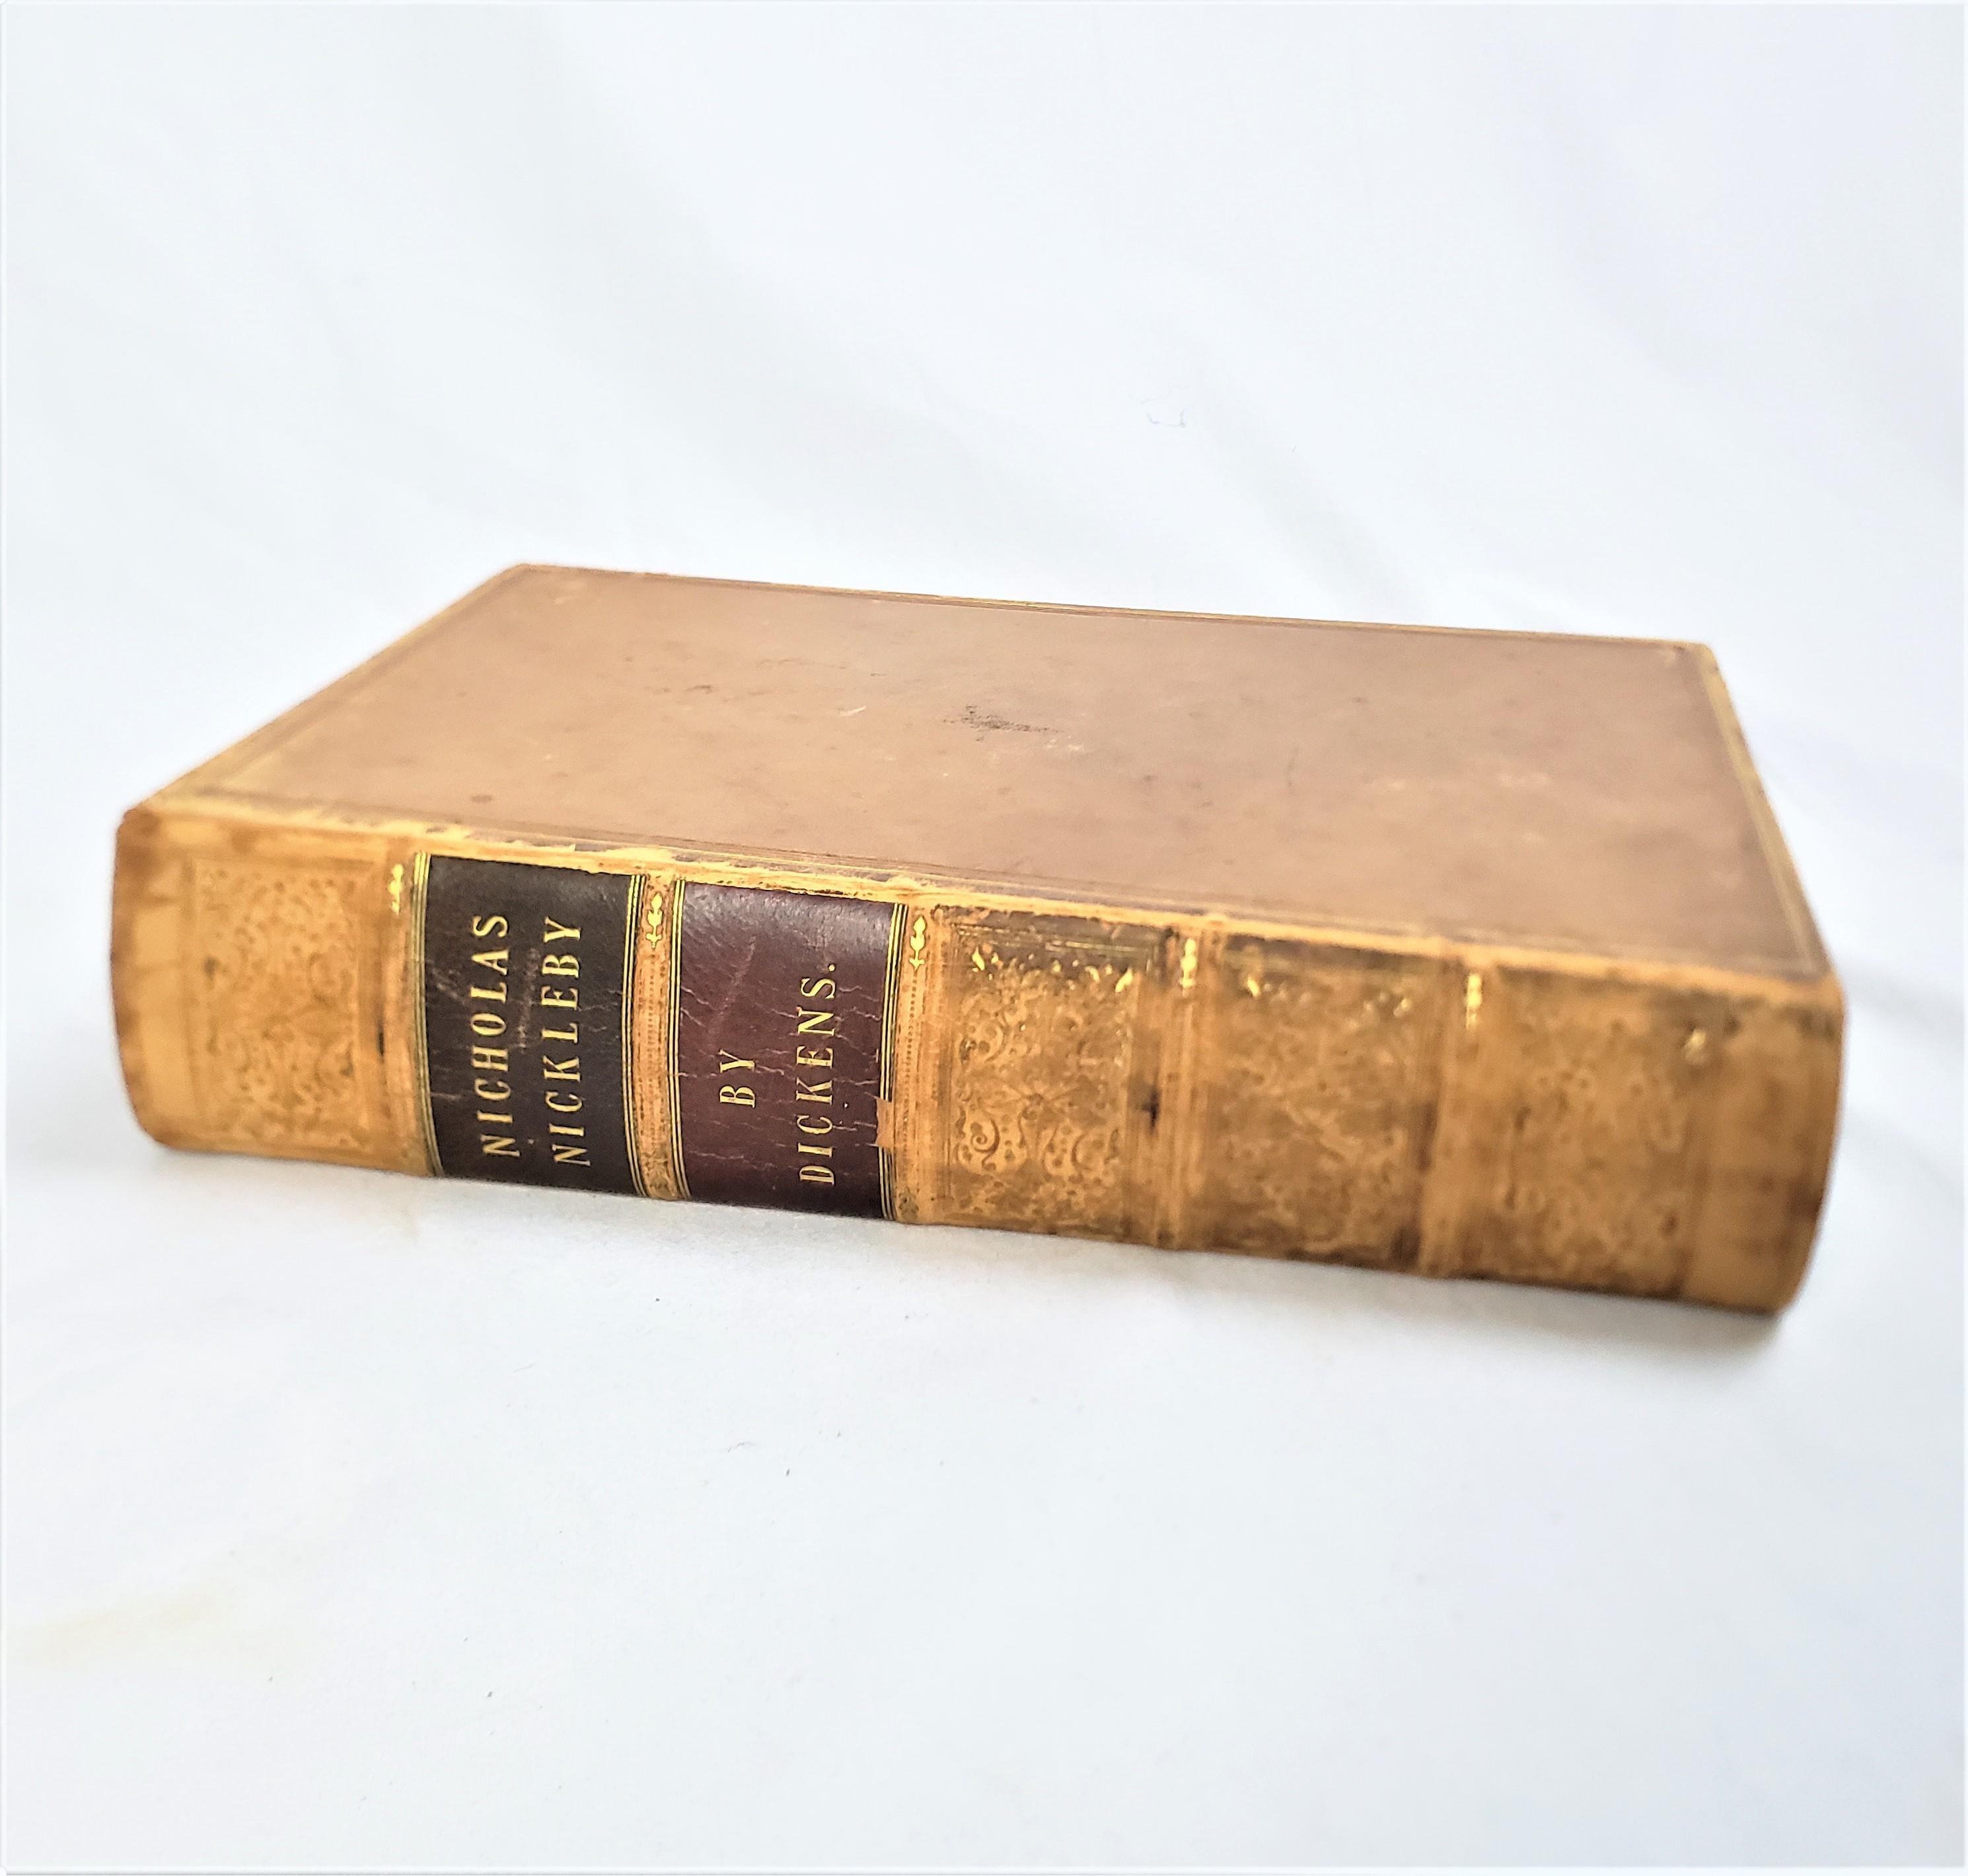 Ce livre ancien de 1ère édition intitulé Nicholas Nickeby a été écrit par Charles Dickens et publié par Chapman and Hall en Angleterre en 1839 dans le style victorien de l'époque avec des gravures de Hablot.  Knight Browne 